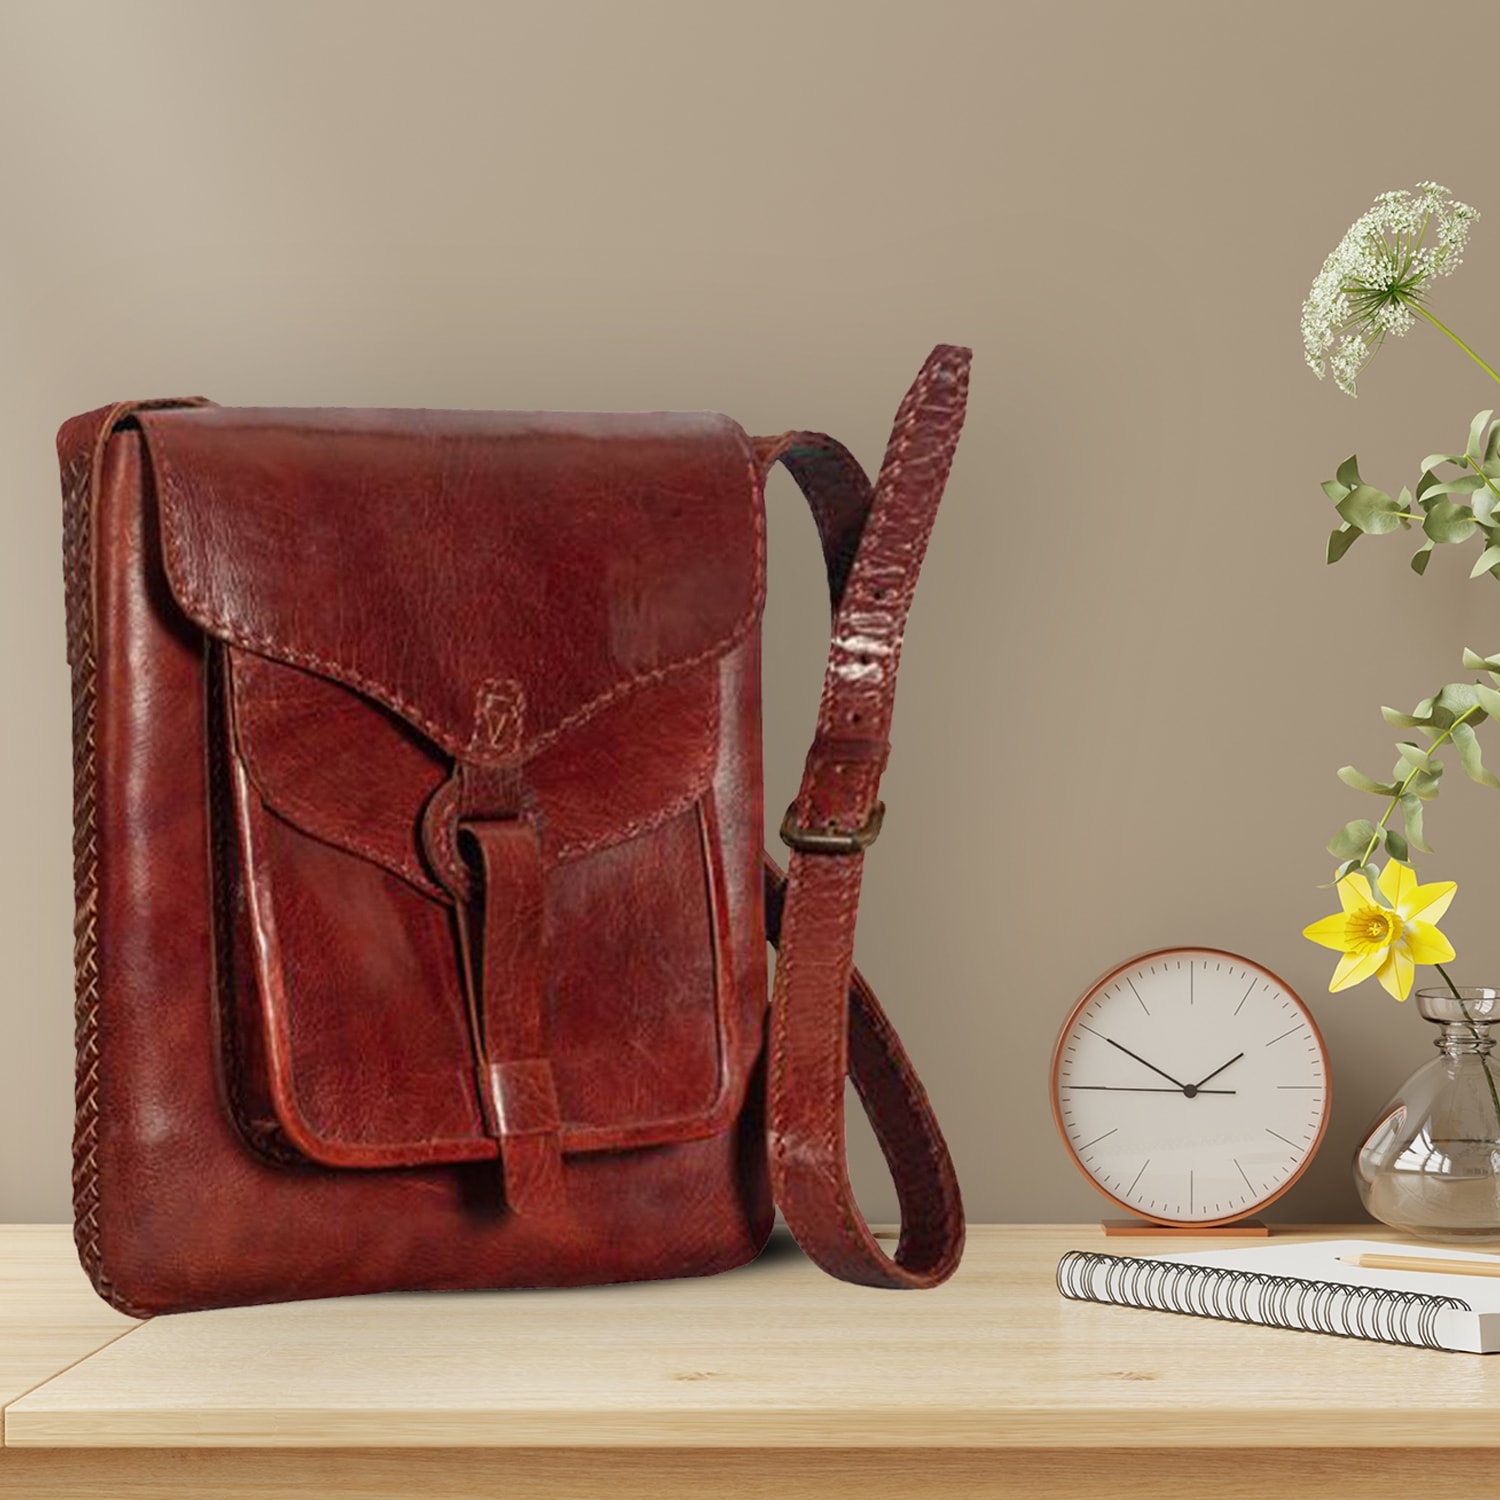 Buy Marsala Carmel 01 Sling Bag Online - Hidesign